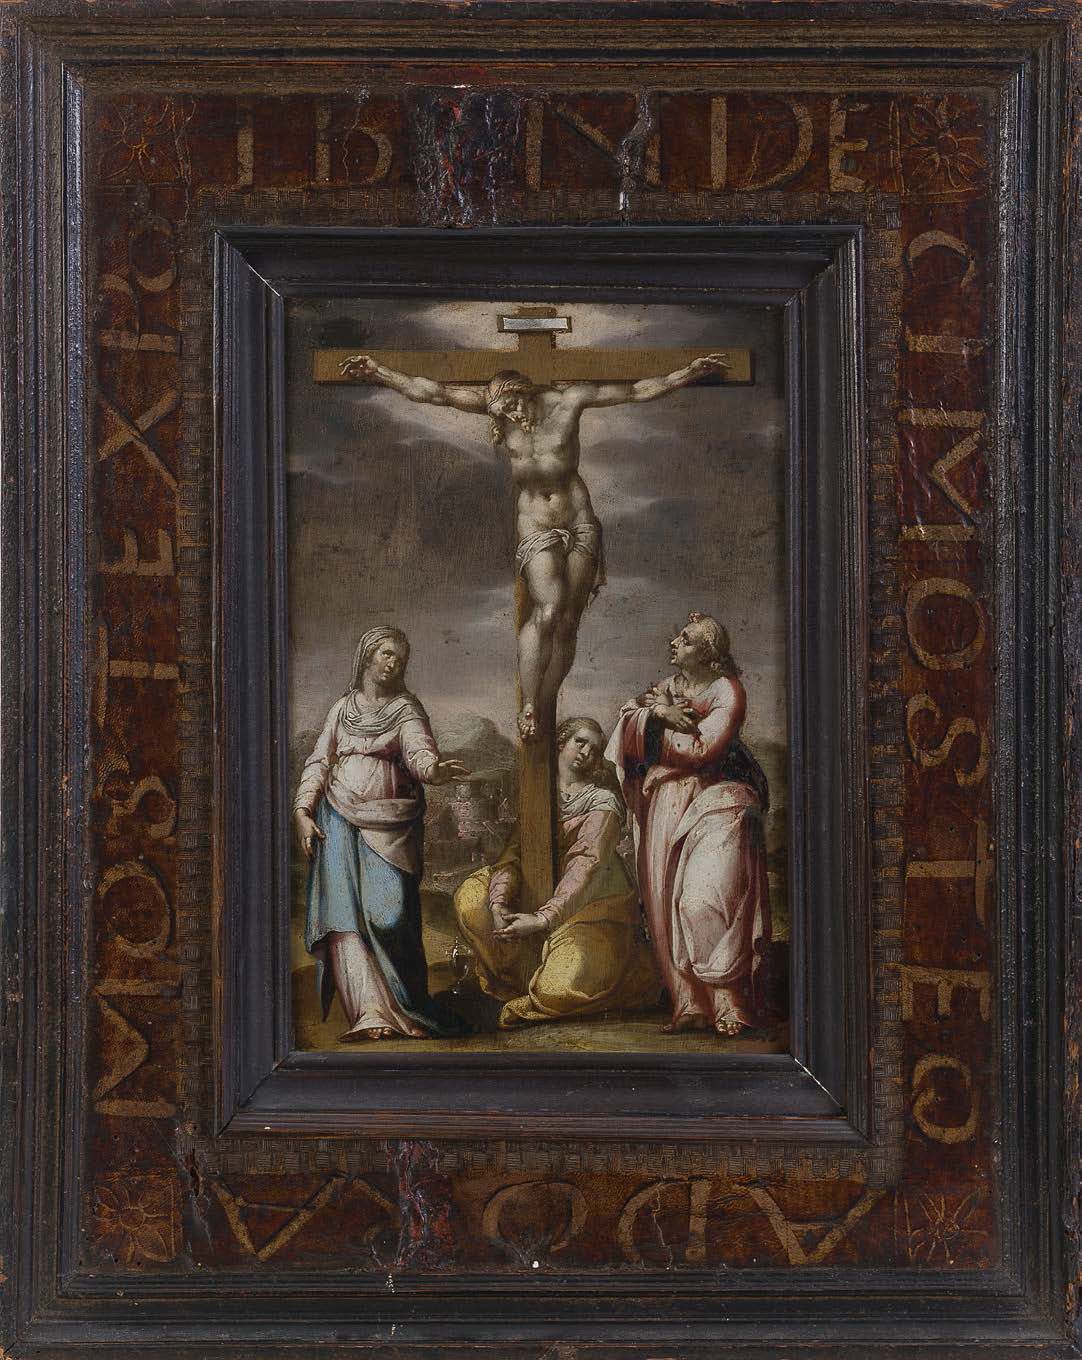 Francesco CAVAZZONI (Bologne 1559 - 1616) The Crucifixion
Copper
24 x 16.5 cm
In&hellip;